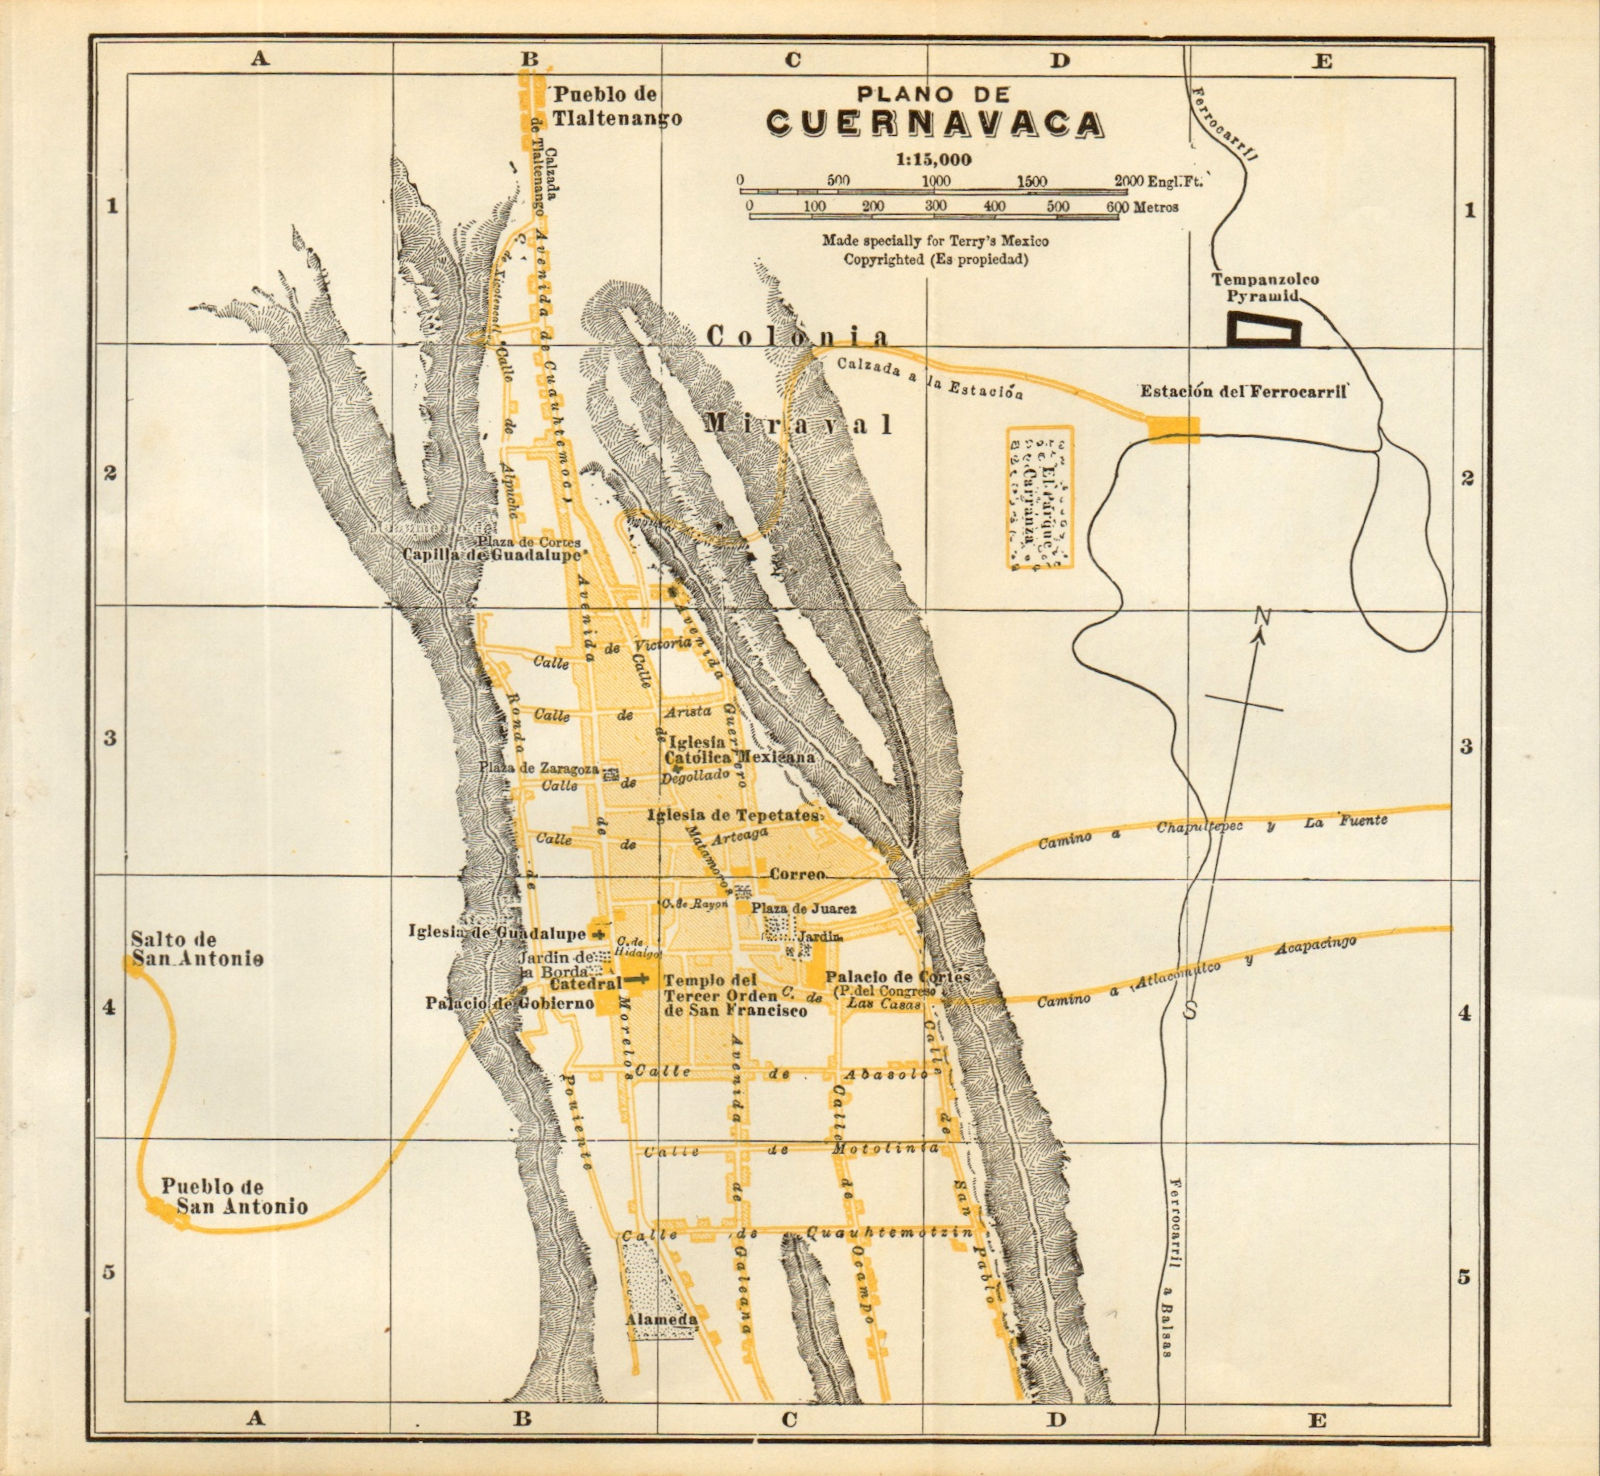 Associate Product Plano de CUERNAVACA, Mexico. Mapa de la ciudad. City/town plan 1935 old